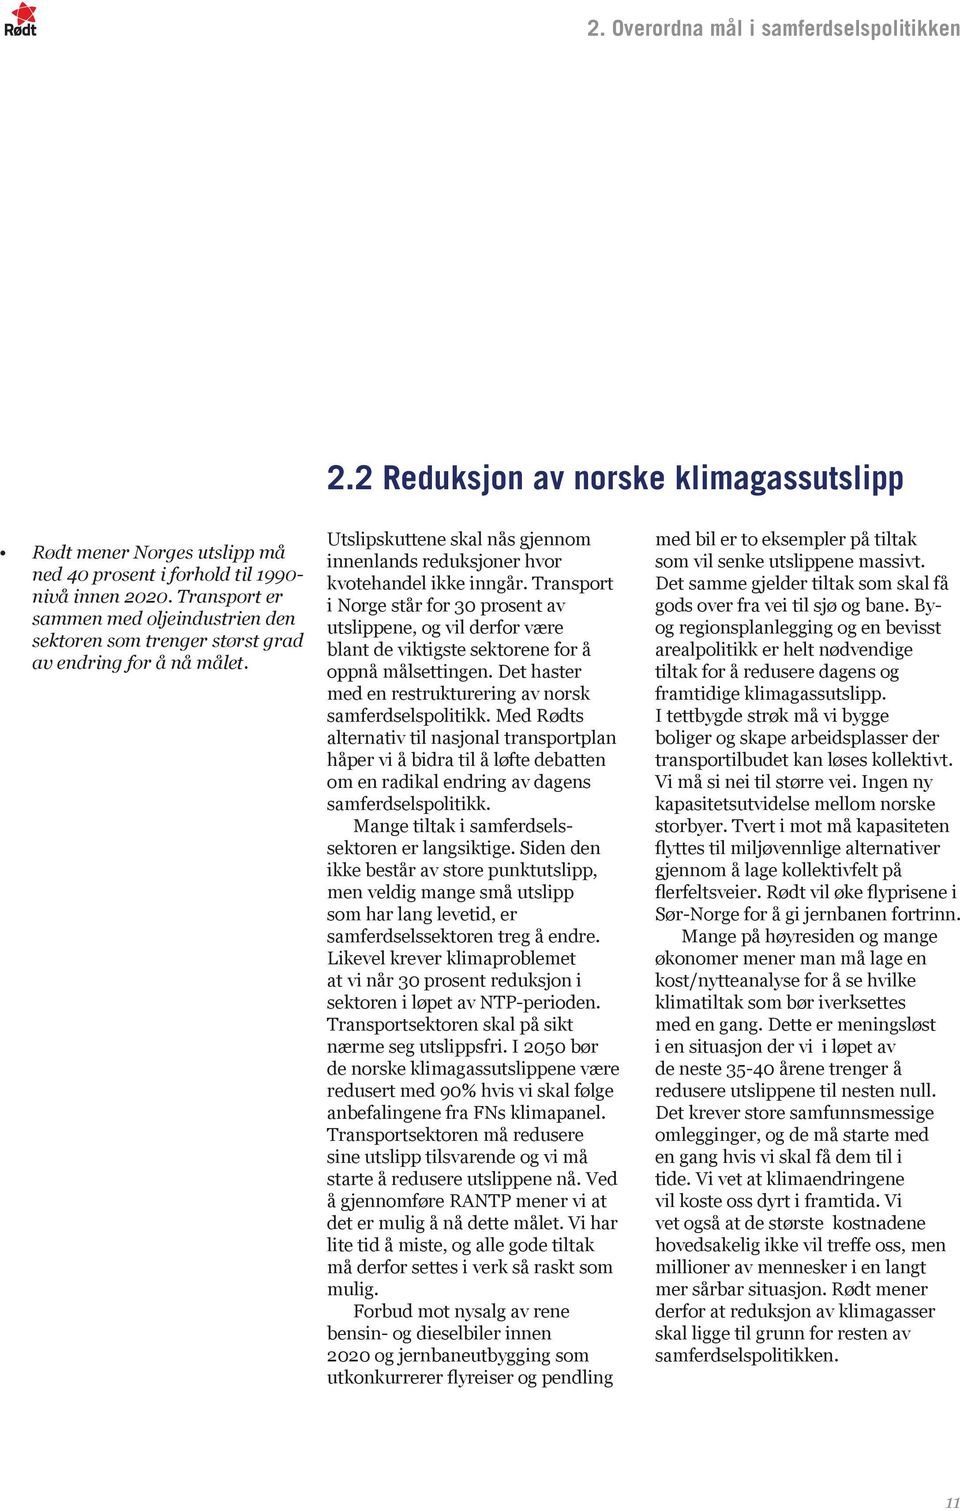 Transport i Norge står for 30 prosent av utslippene, og vil derfor være blant de viktigste sektorene for å oppnå målsettingen. Det haster med en restrukturering av norsk samferdselspolitikk.